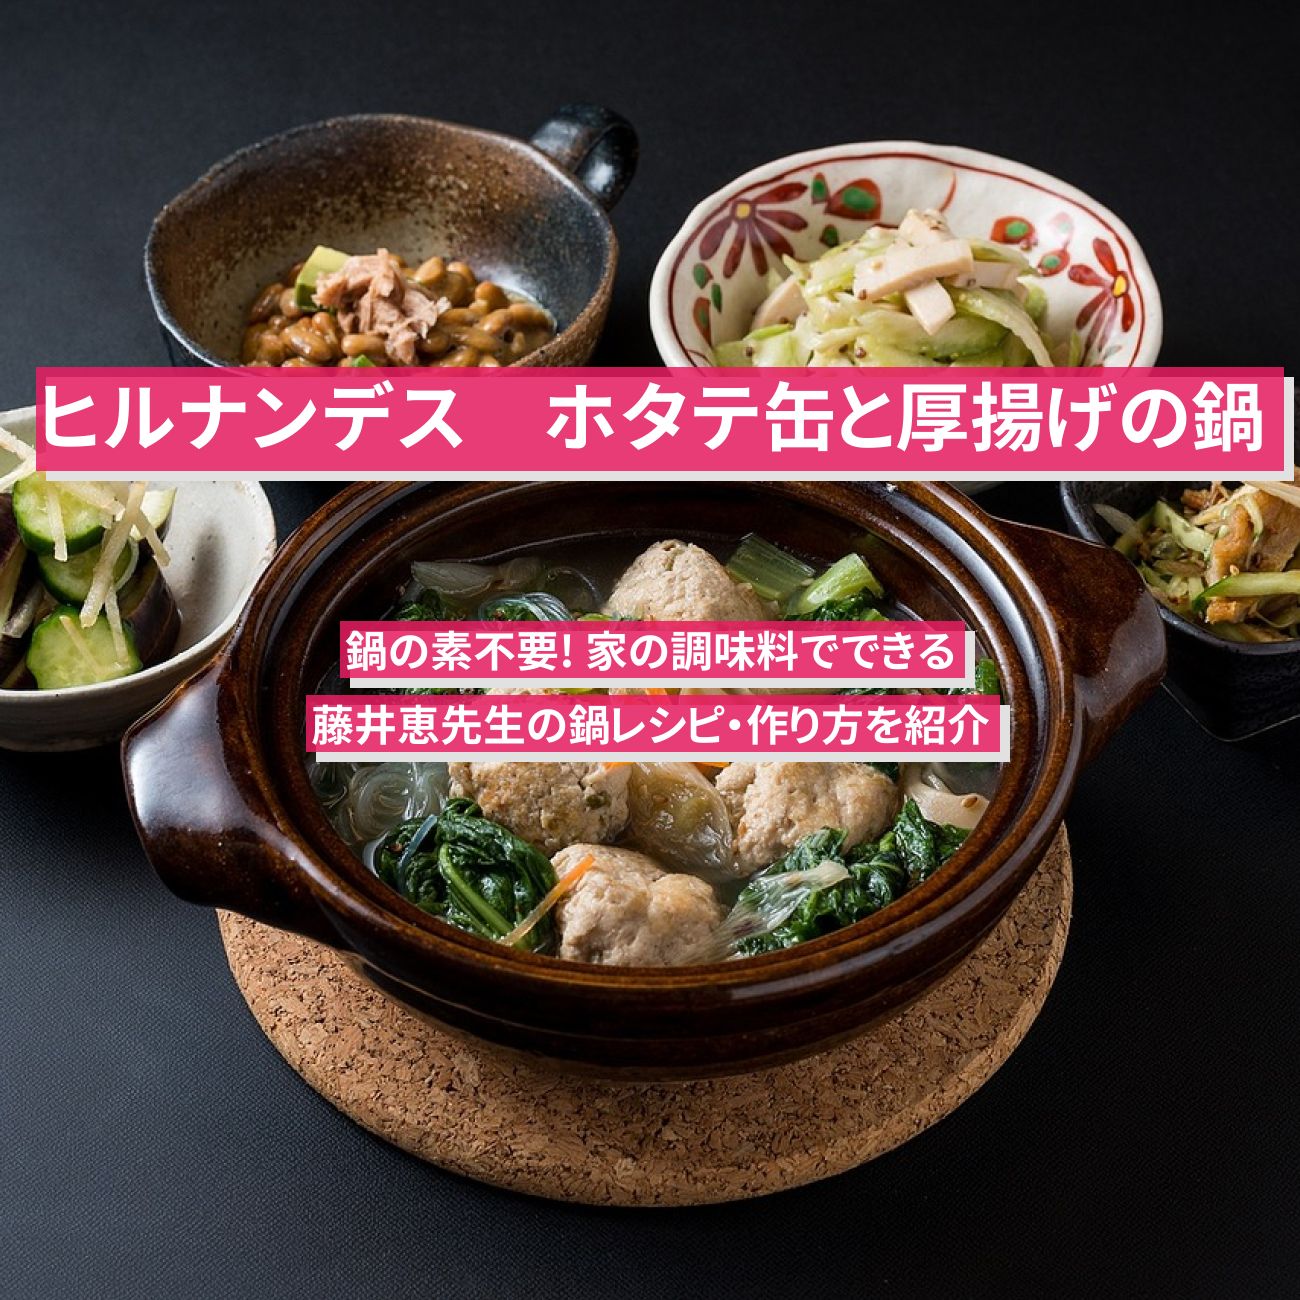 【ヒルナンデス】『ホタテ缶と厚揚げの鍋』藤井恵先生の鍋レシピ・作り方を紹介